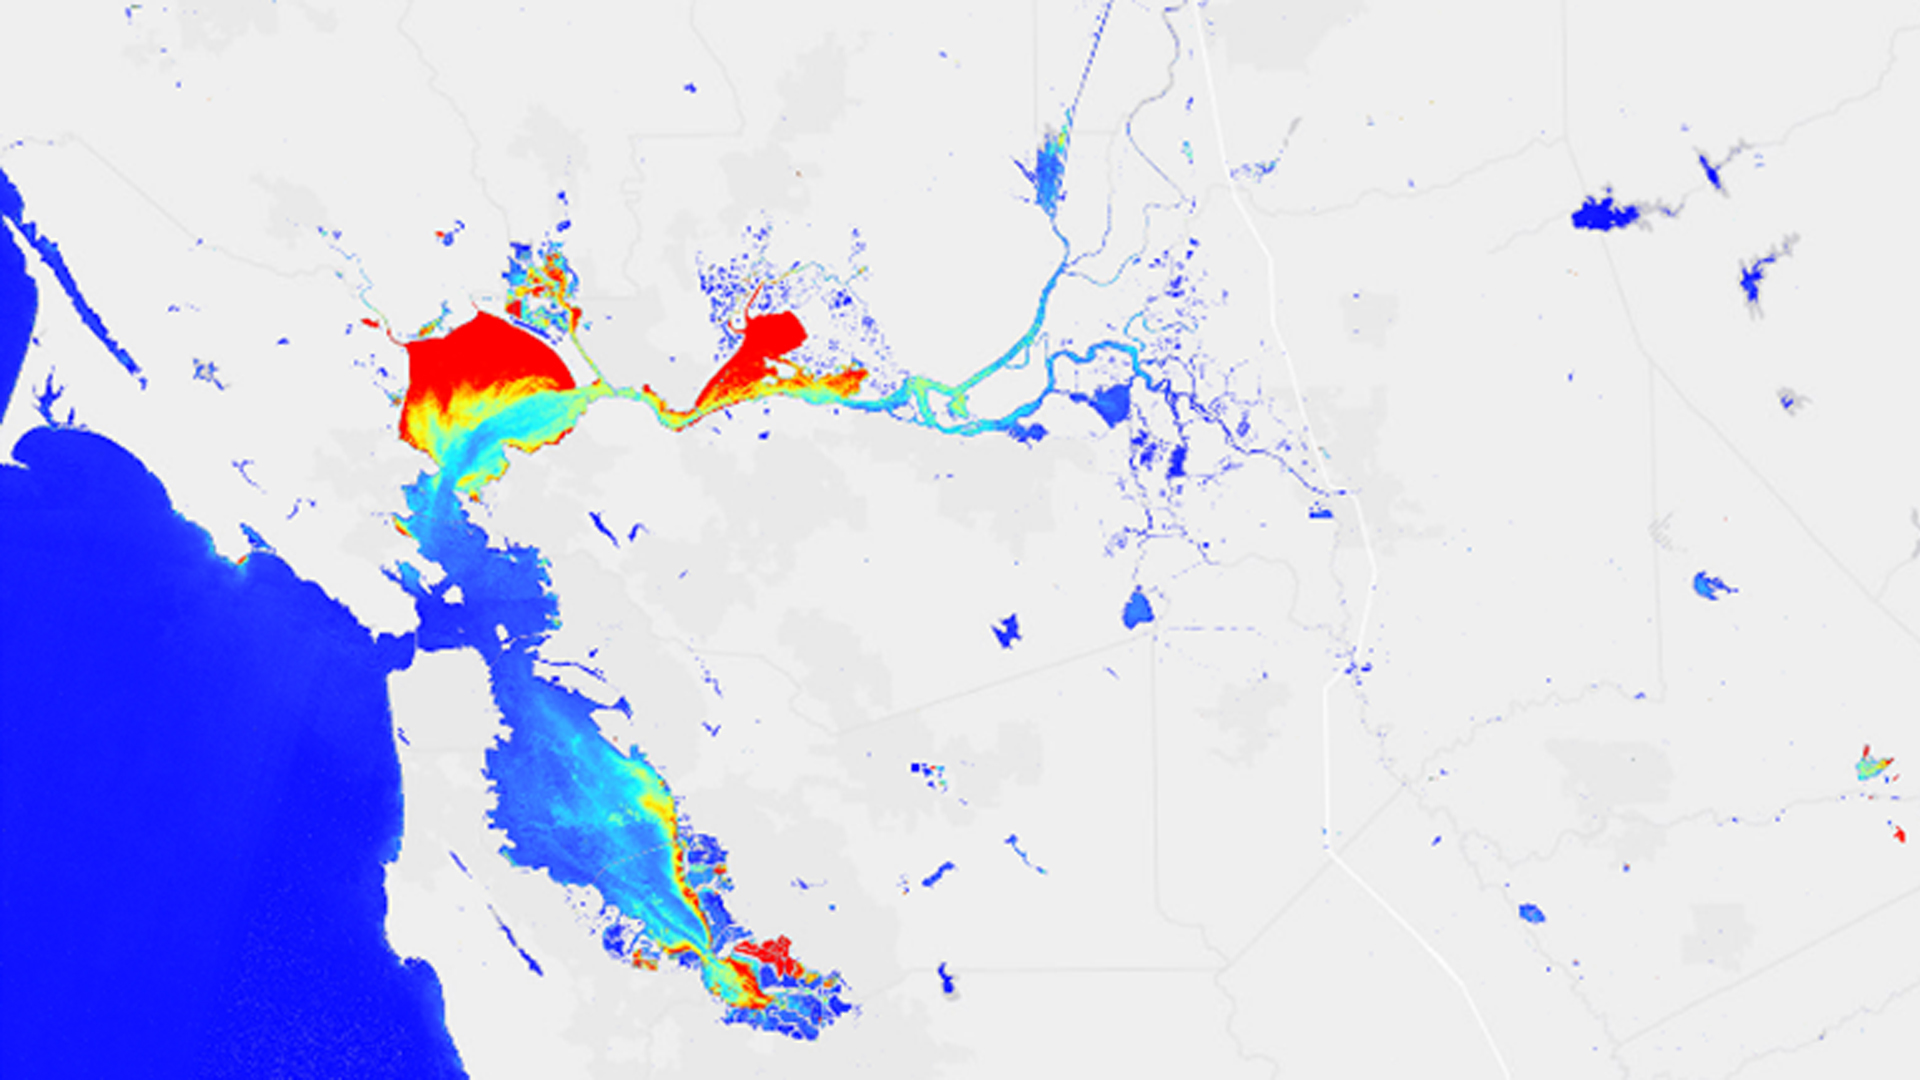 San Francisco Bay-Delta Water Resources